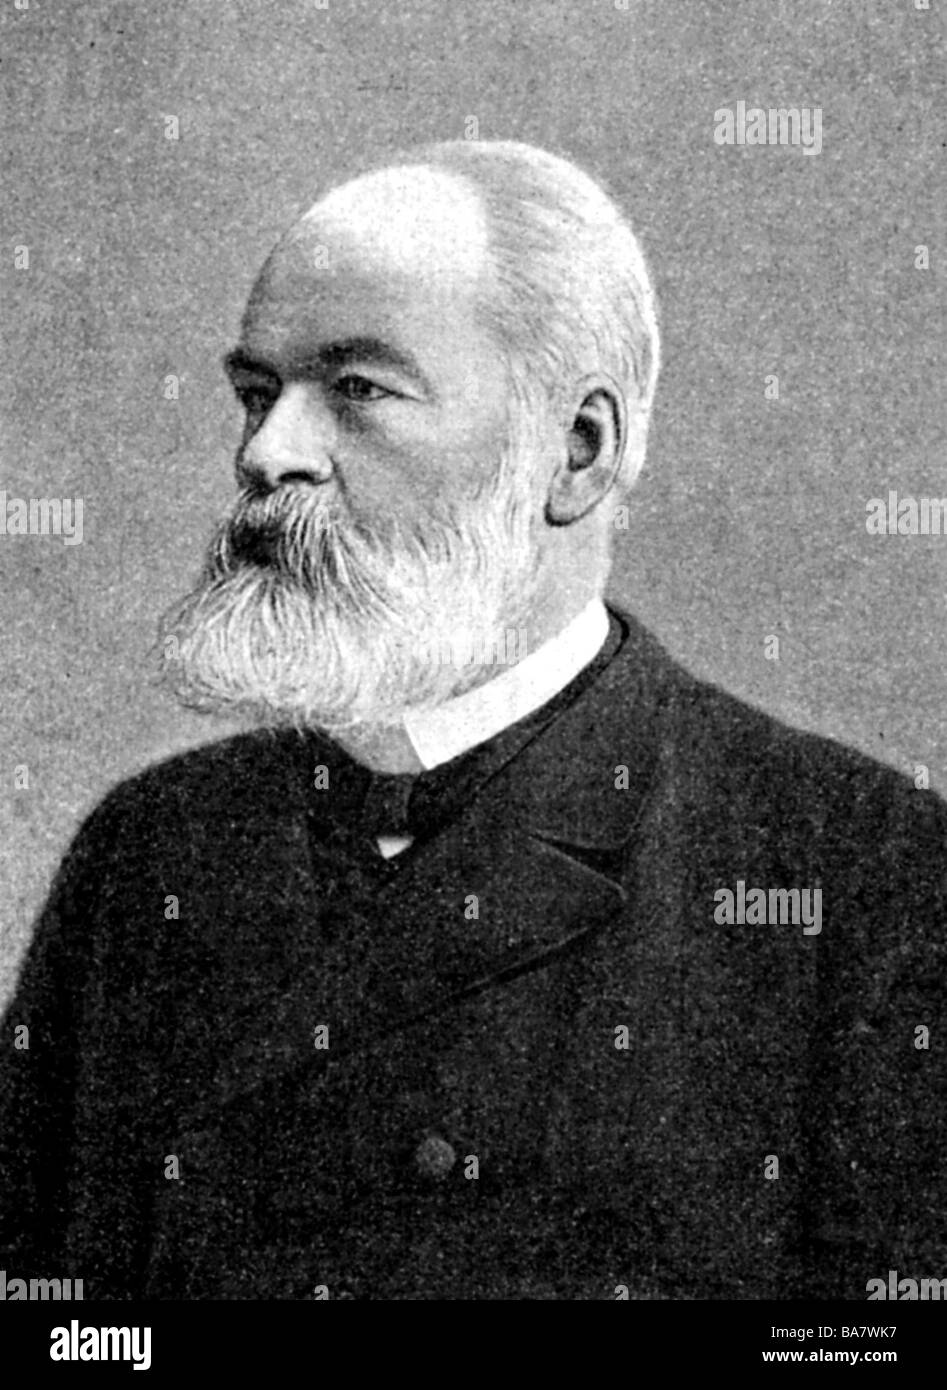 Schmoller, Gustav von, 24.6.1838 - 27.6.1917, German economist, portrait, after photo, Stock Photo